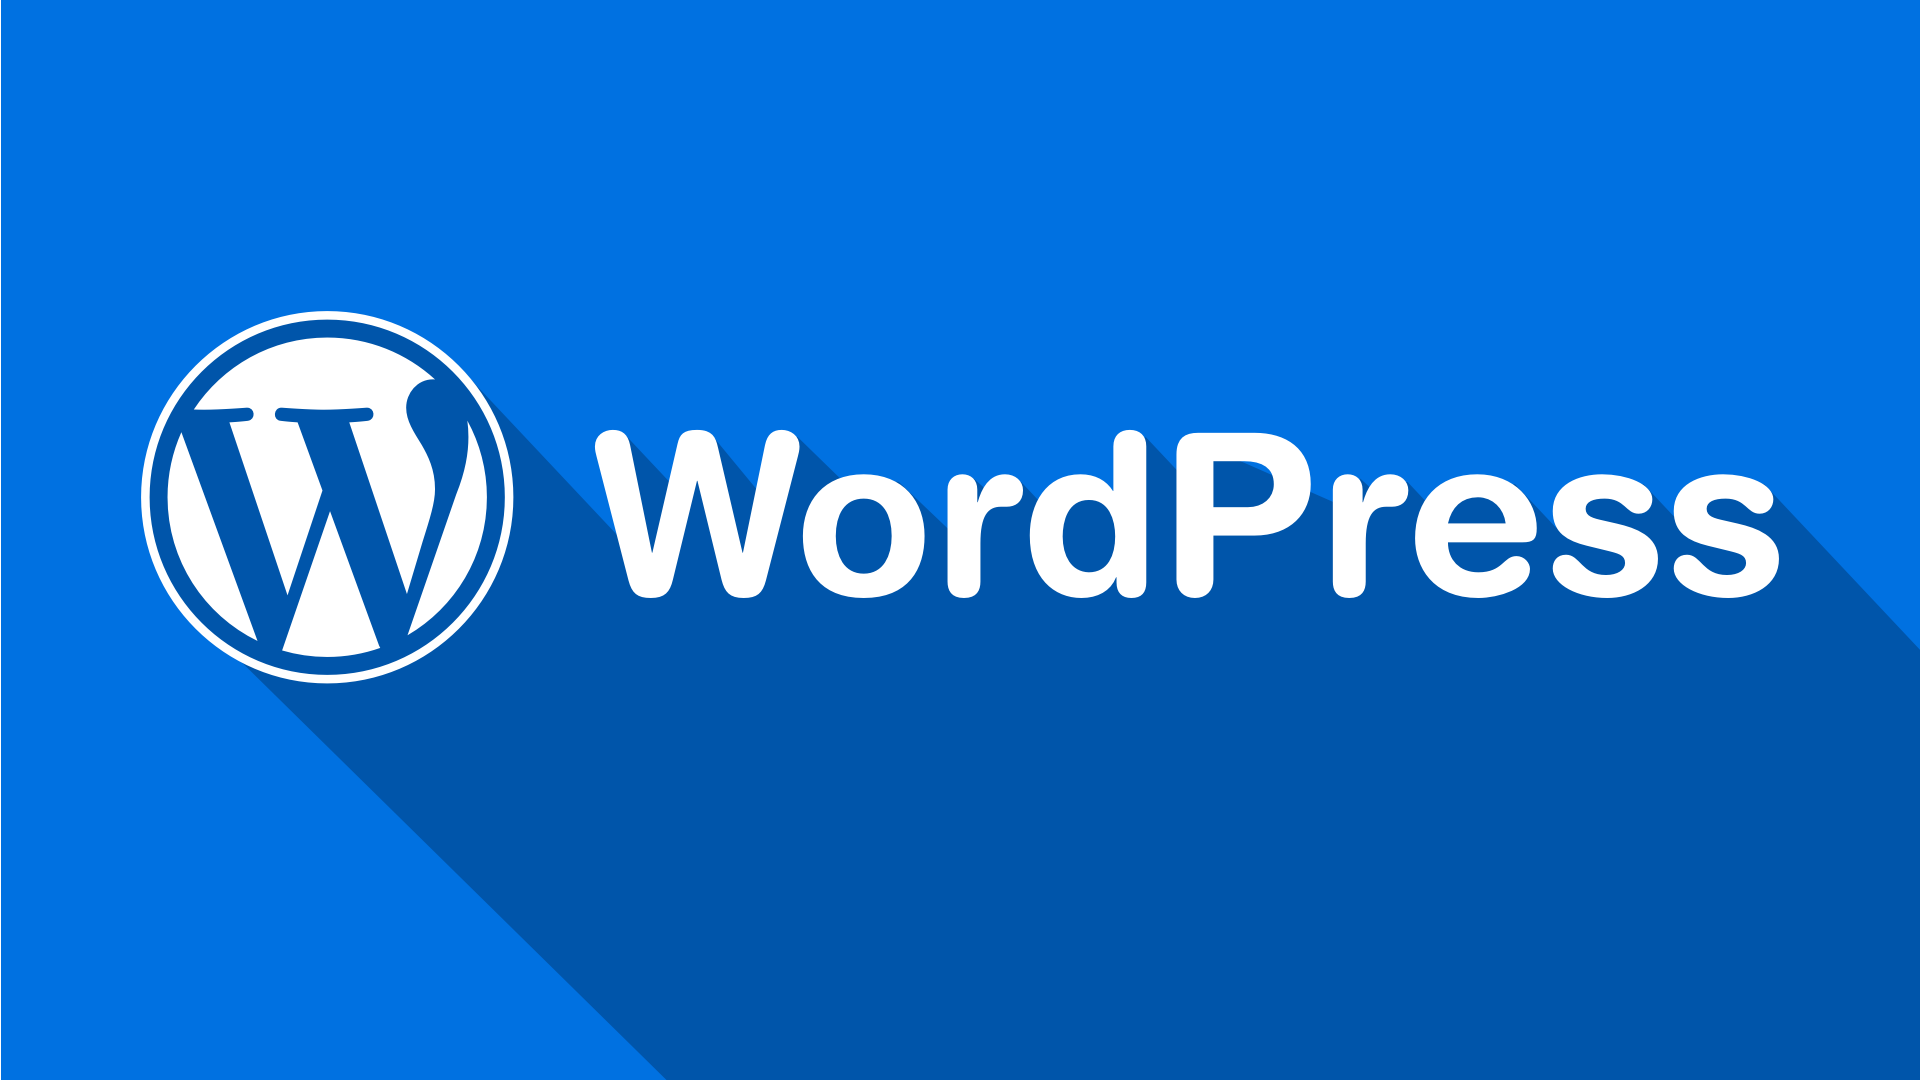 Tại Sao Nên Tự Học Cách Làm Website Bằng Wordpress?